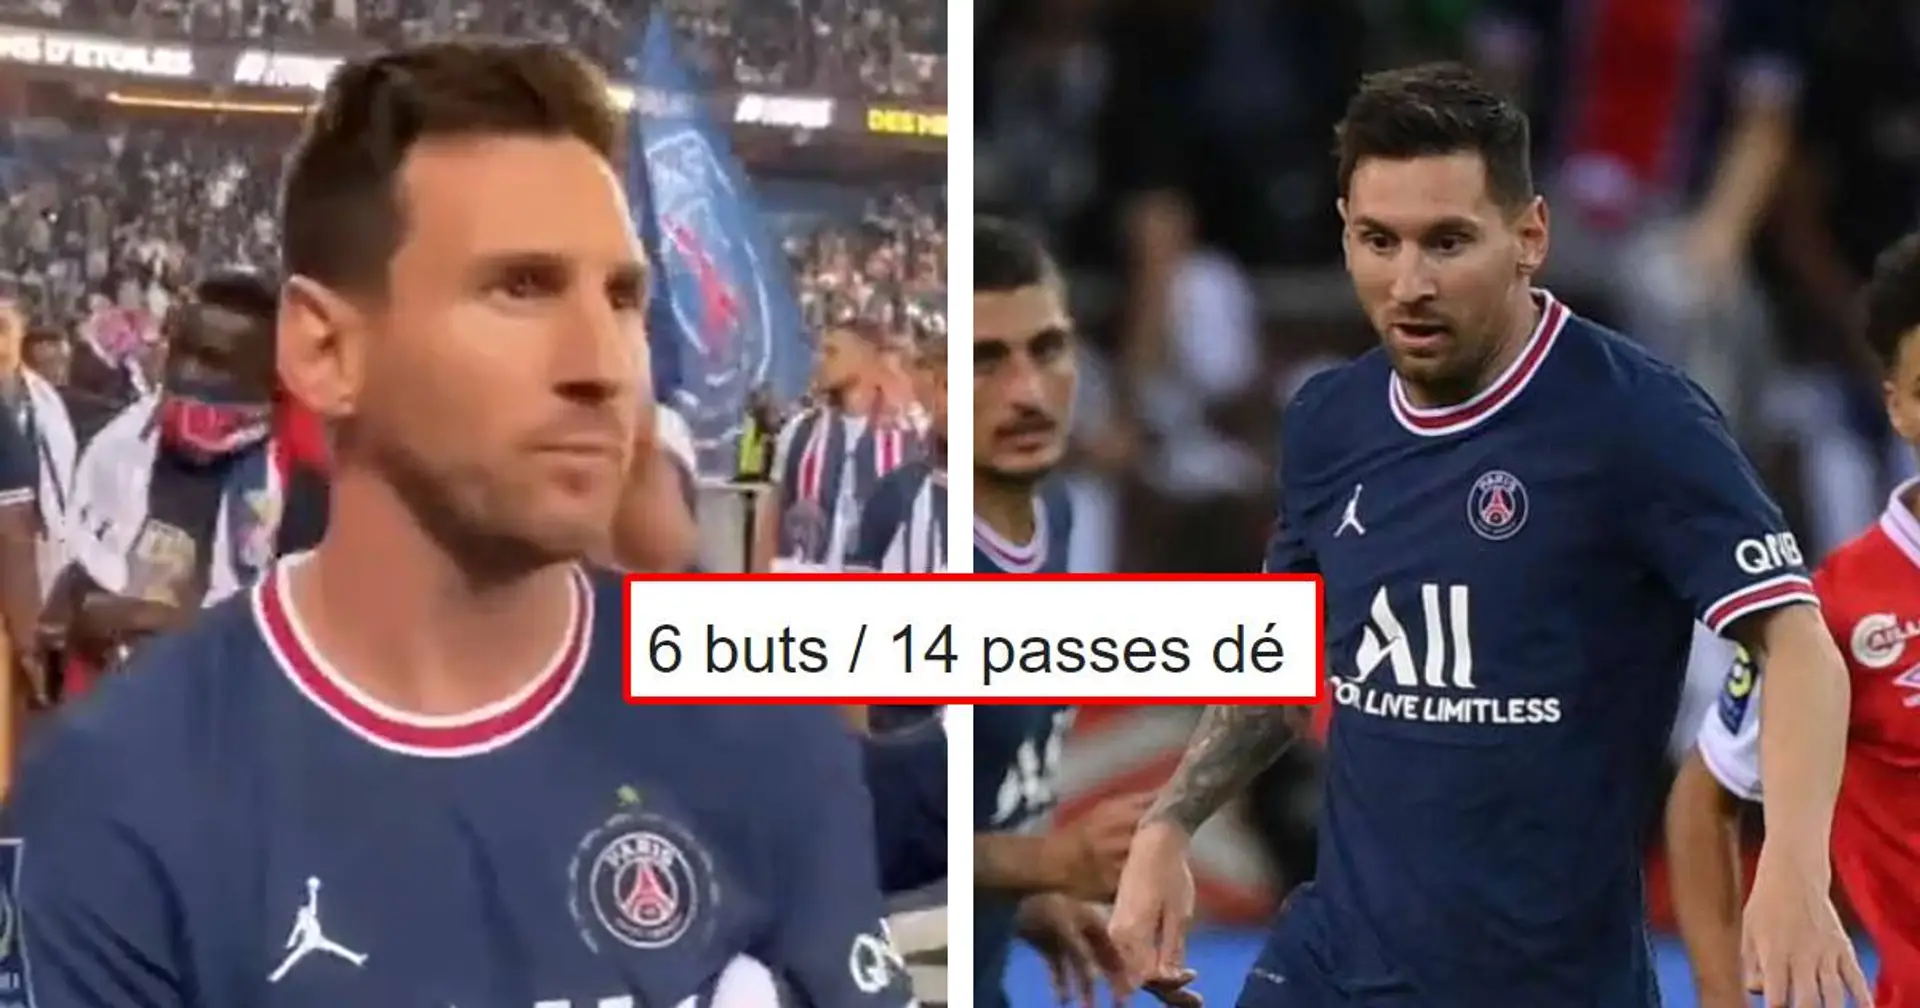 "Sa saison a été moyenne et il le sait": 2 fans expliquent pourquoi Messi avait l'air triste lors de la célébration du titre